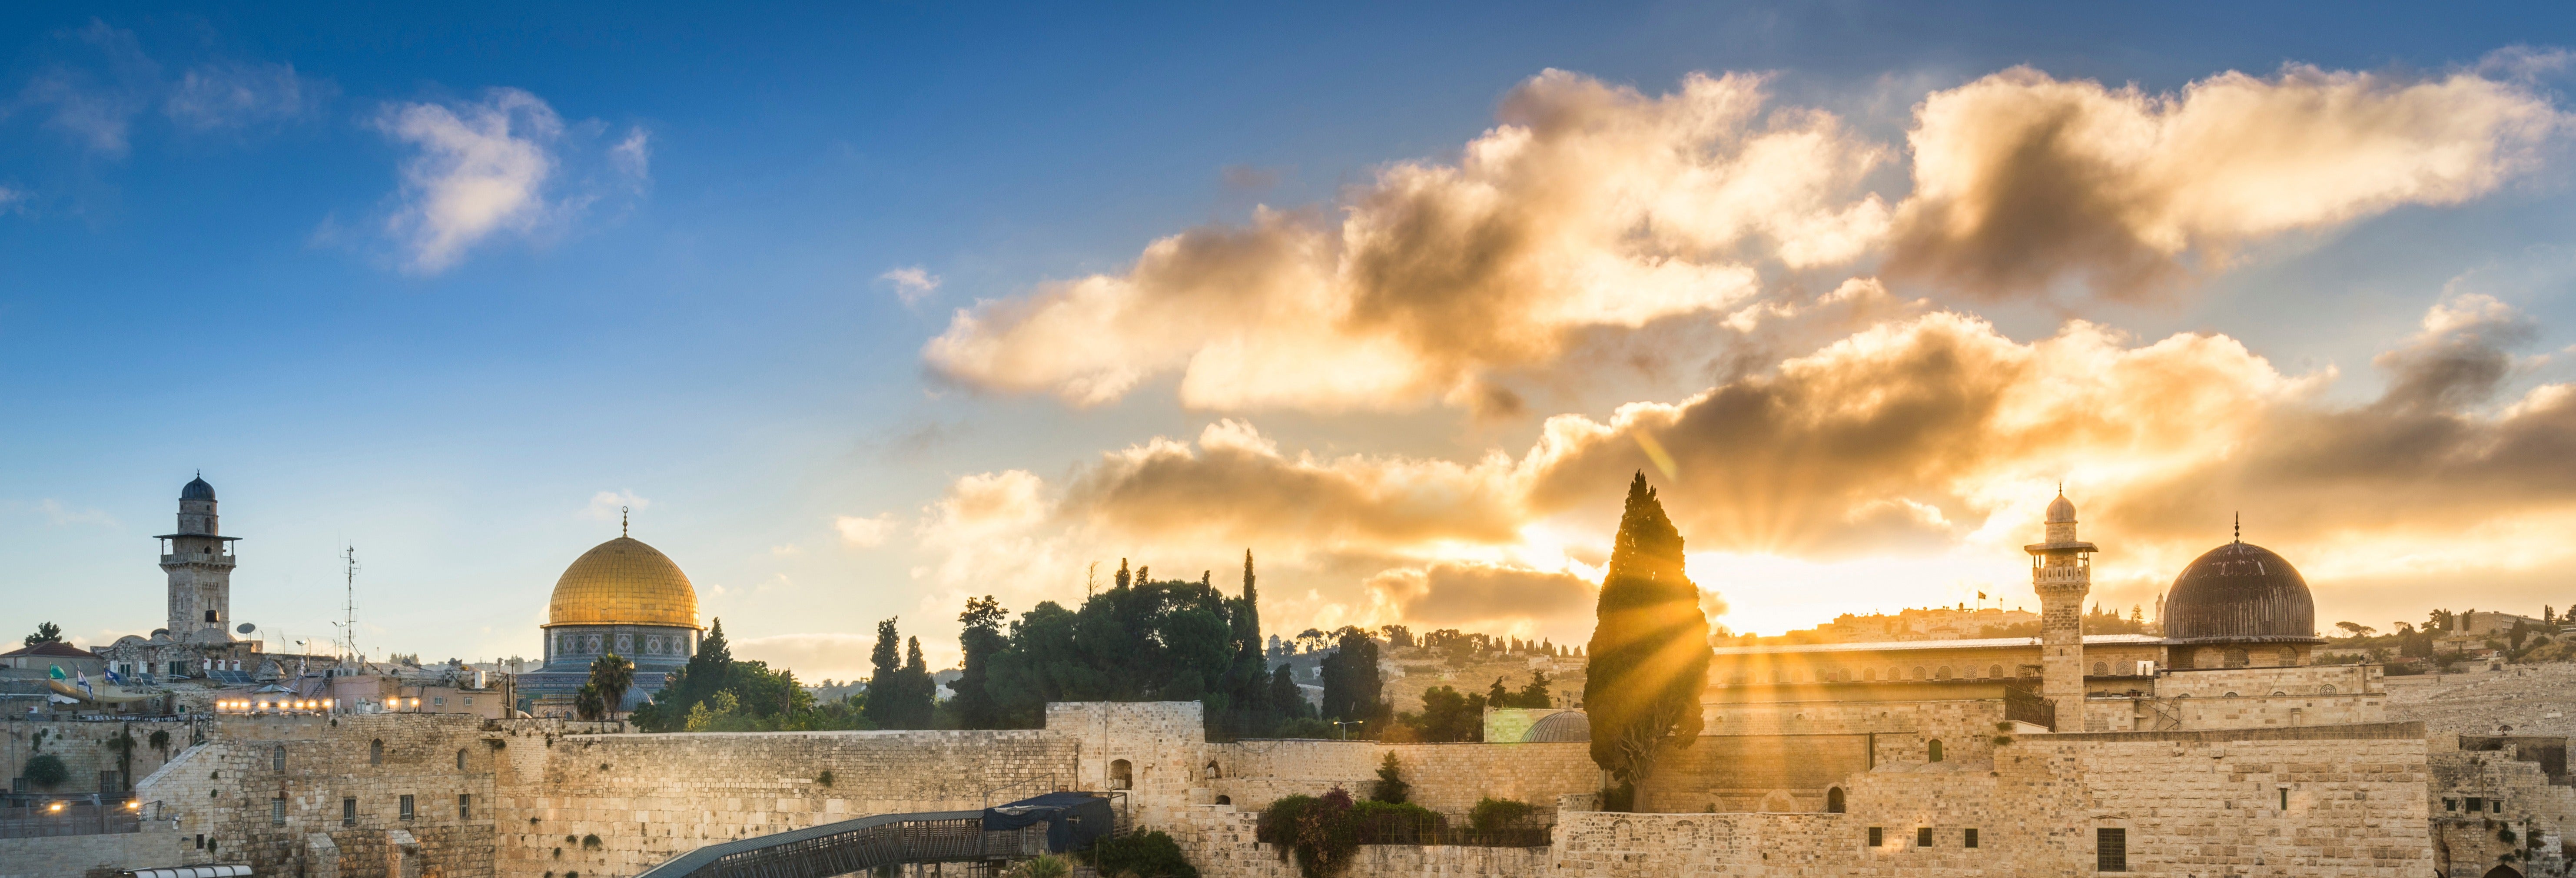 Excursão a Jerusalém e Belém